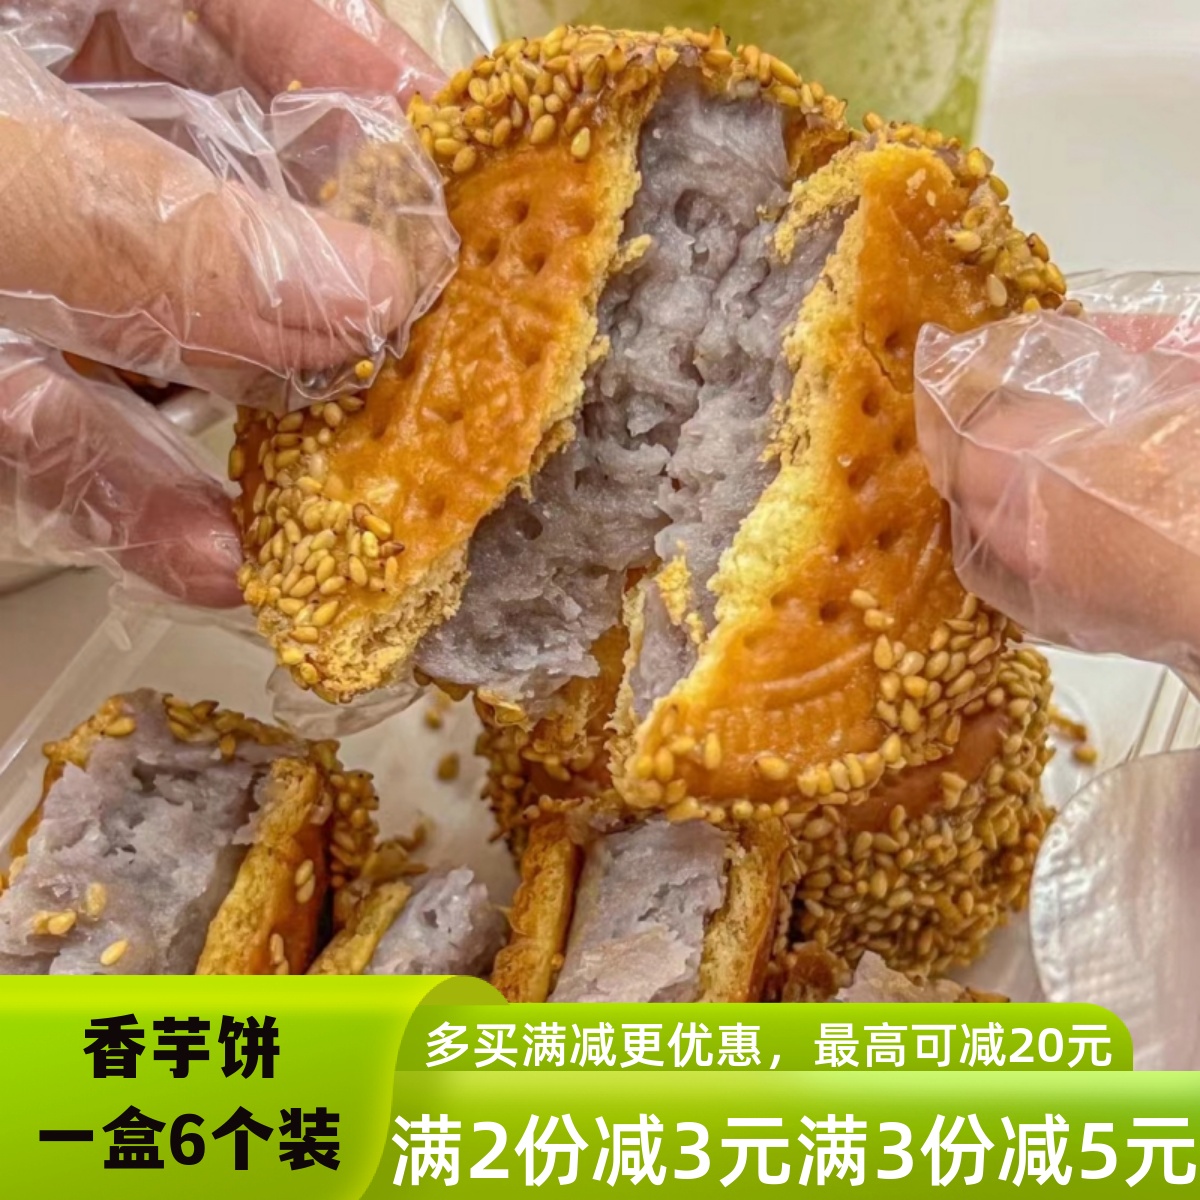 芋头饼香芋饼芝麻饼干夹心芋泥饼福建闽南特产茶点传统手工糕点